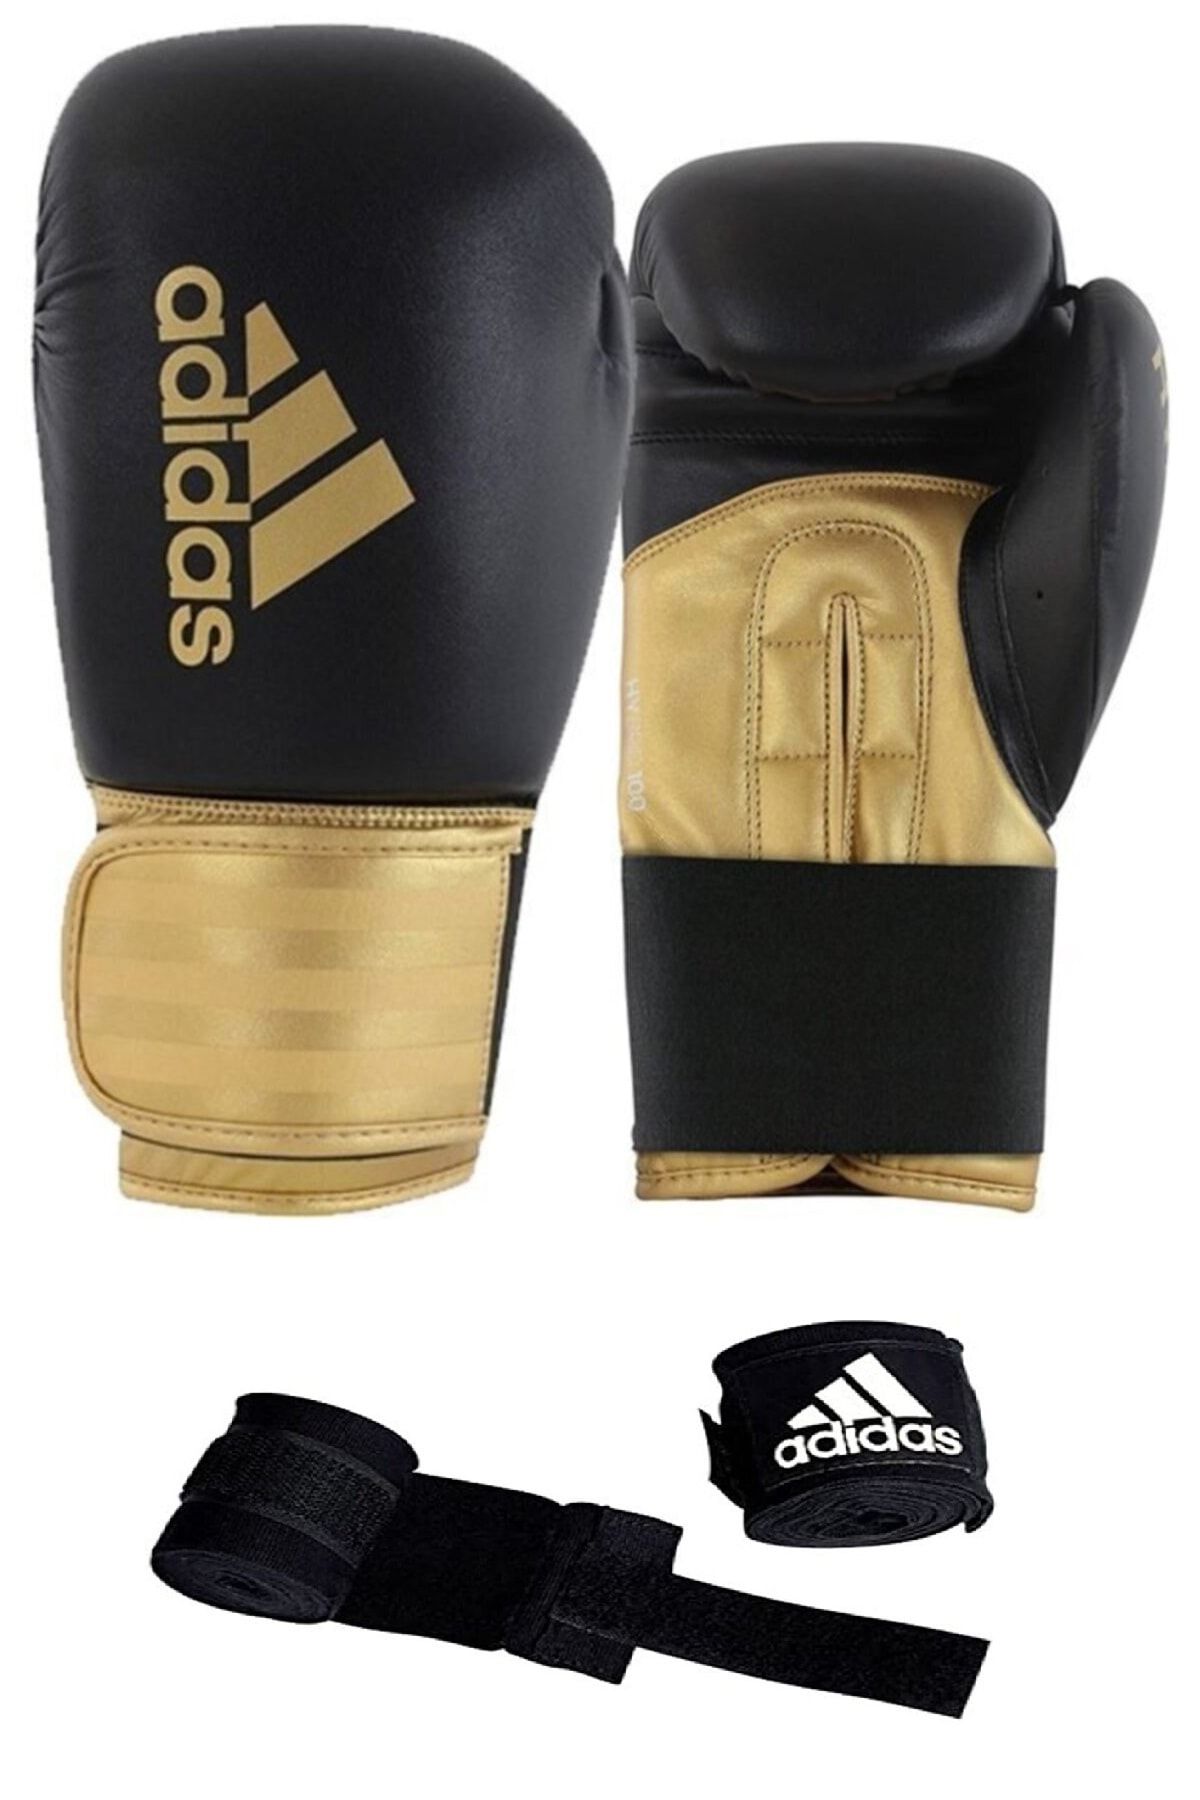 adidas Altın Adıh100 Hybrid100 Boks Eldiveni Boxing Gloves Ve Bandaj Suni Deri